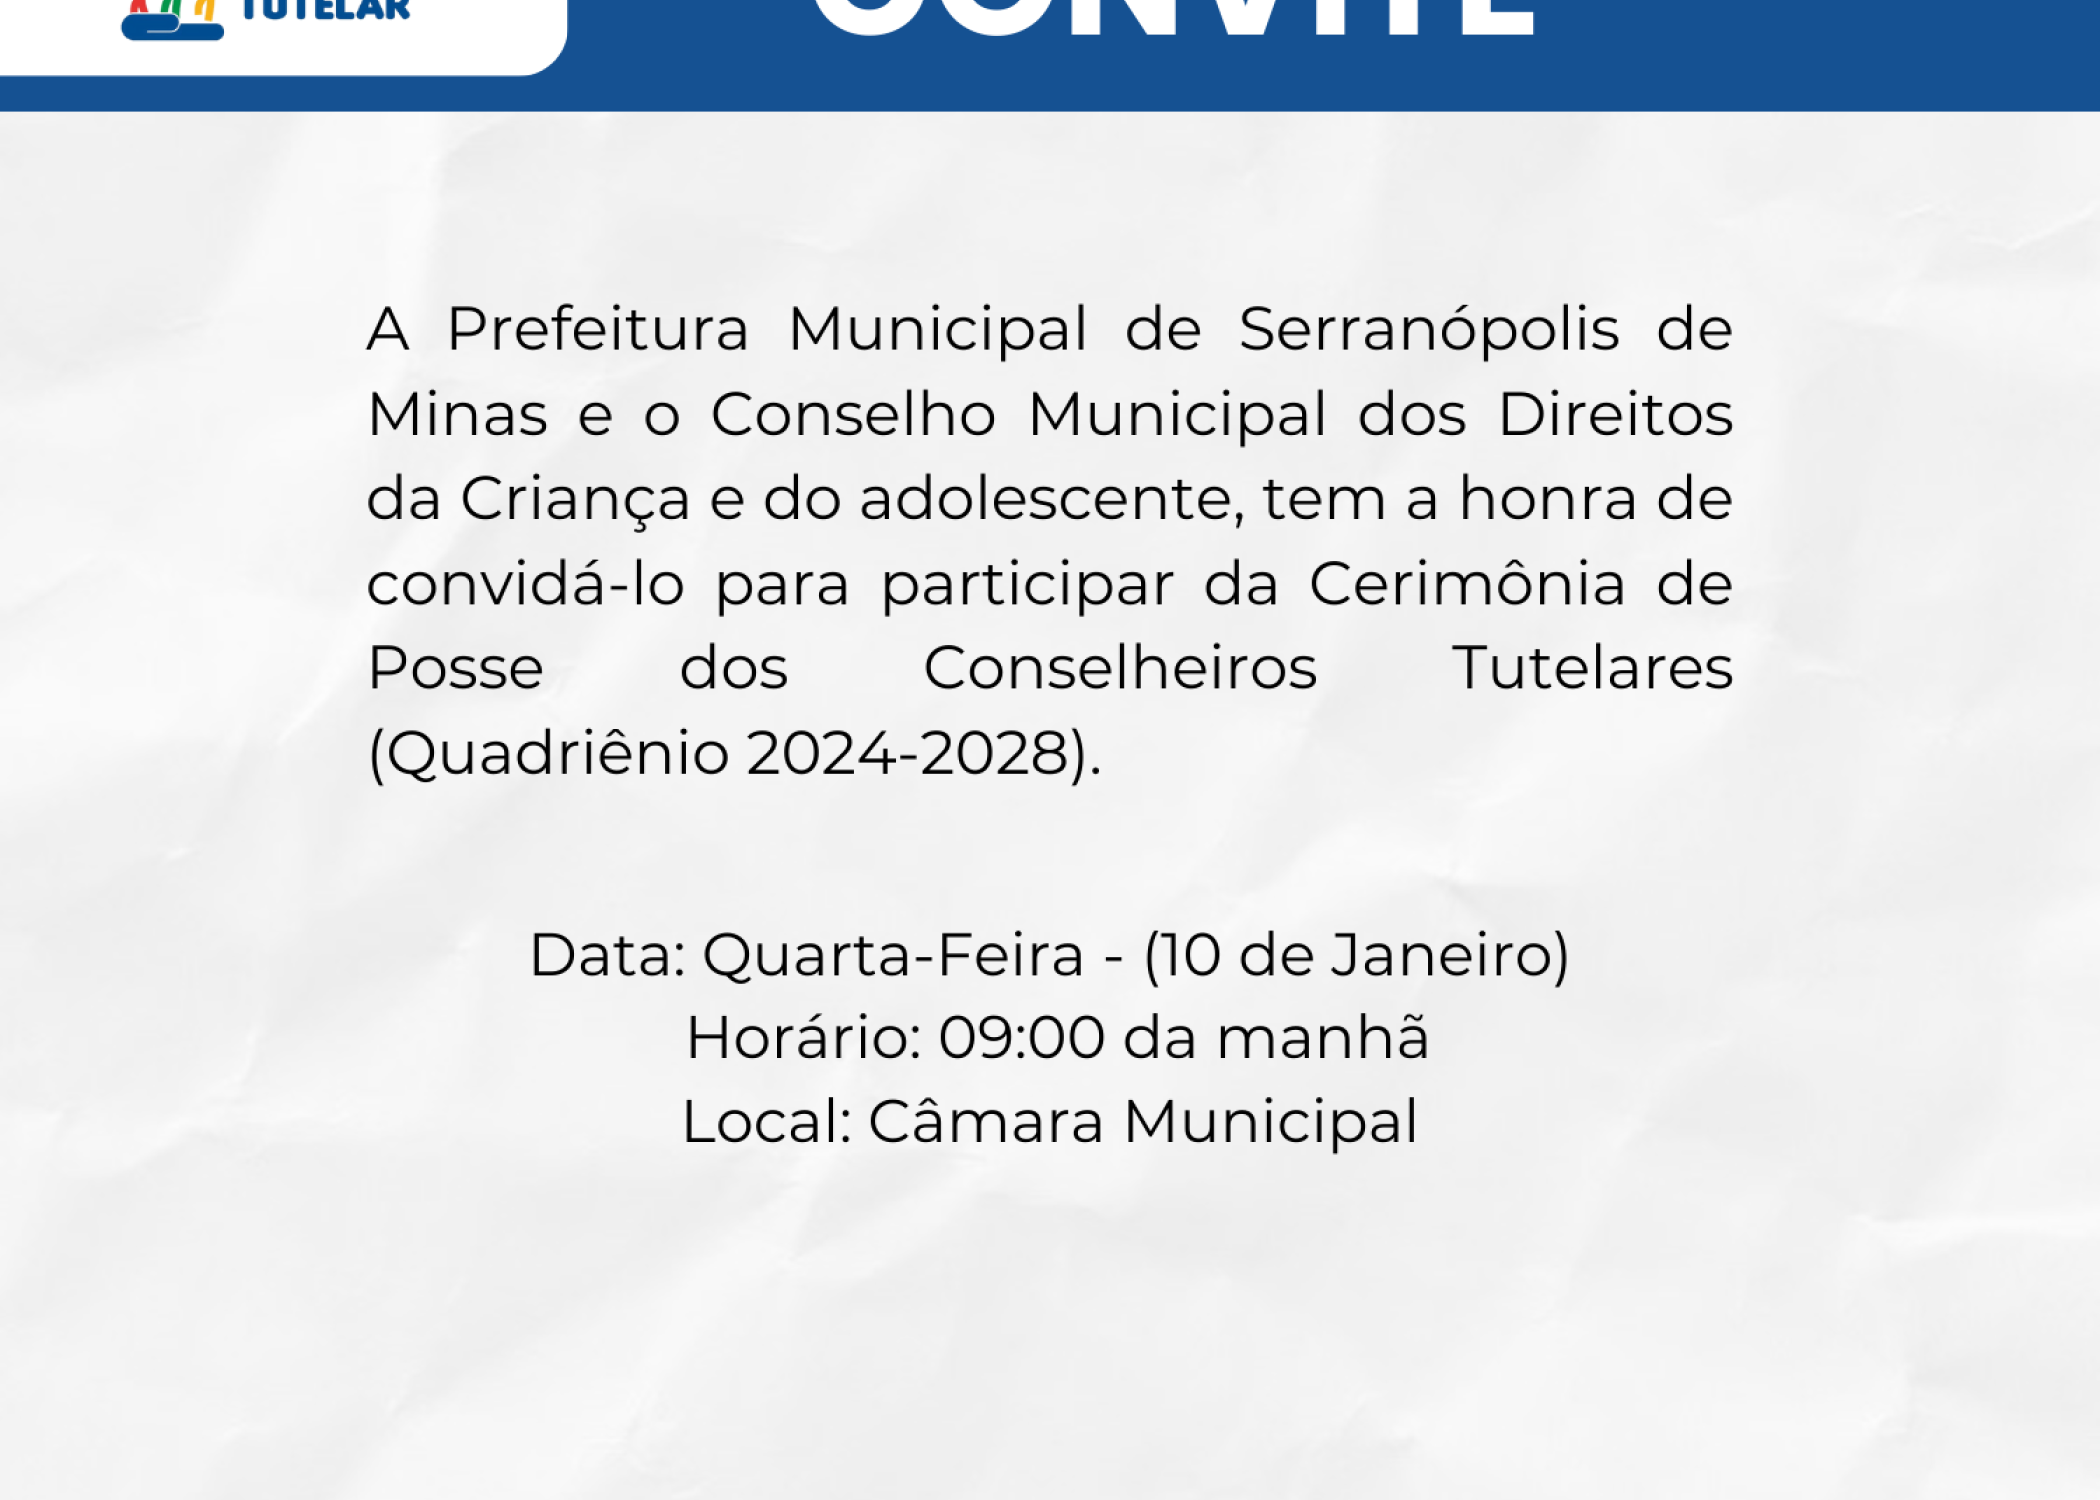 Convite - Cerimônia de Posse dos Conselheiros Tutelares (Quadriênio 2024-2028).